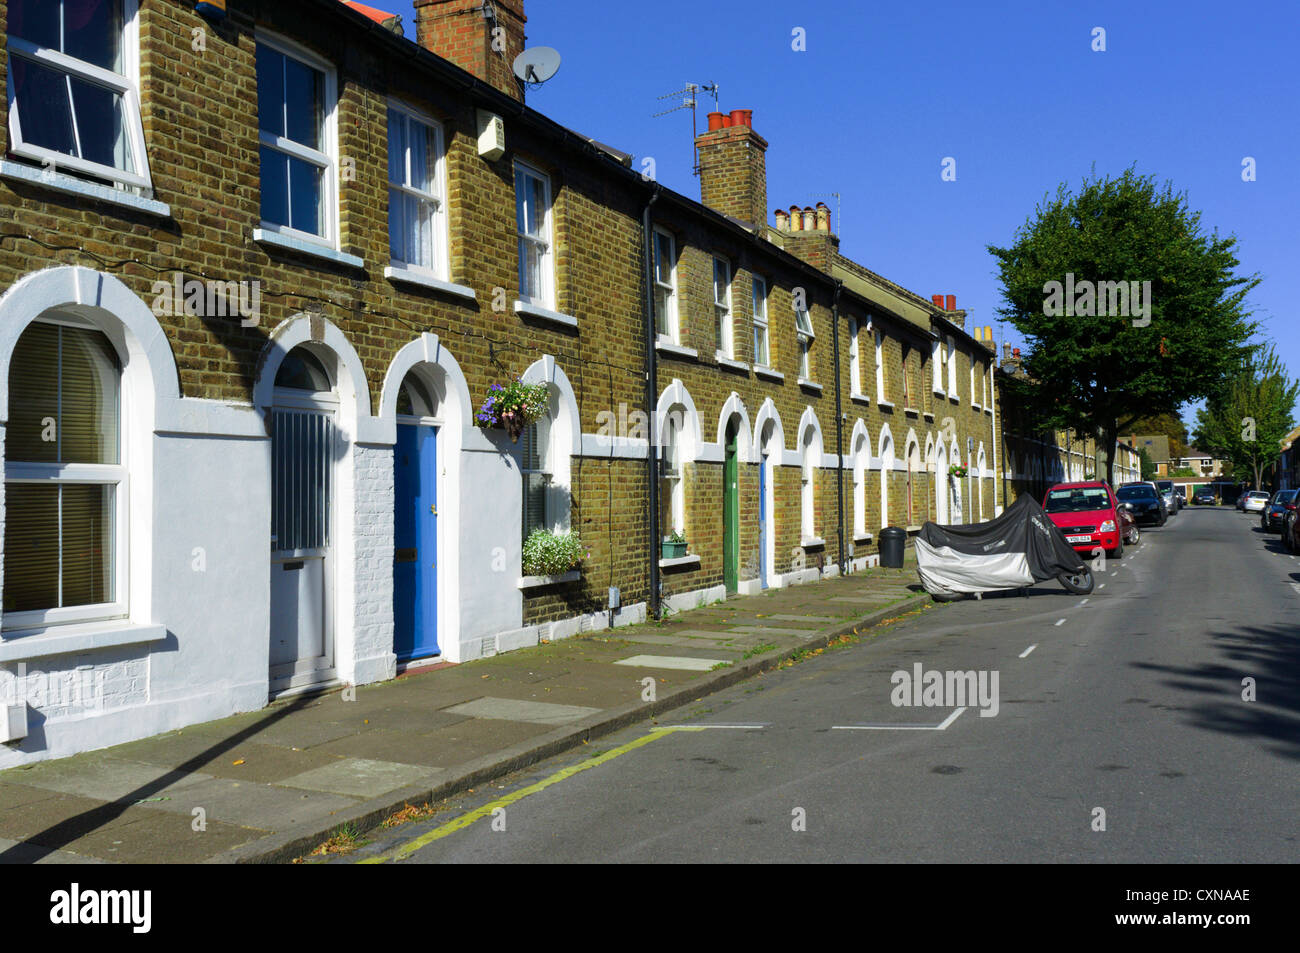 Une rue de banlieue de petites maisons mitoyennes à Bromley, dans le sud de Londres. Banque D'Images